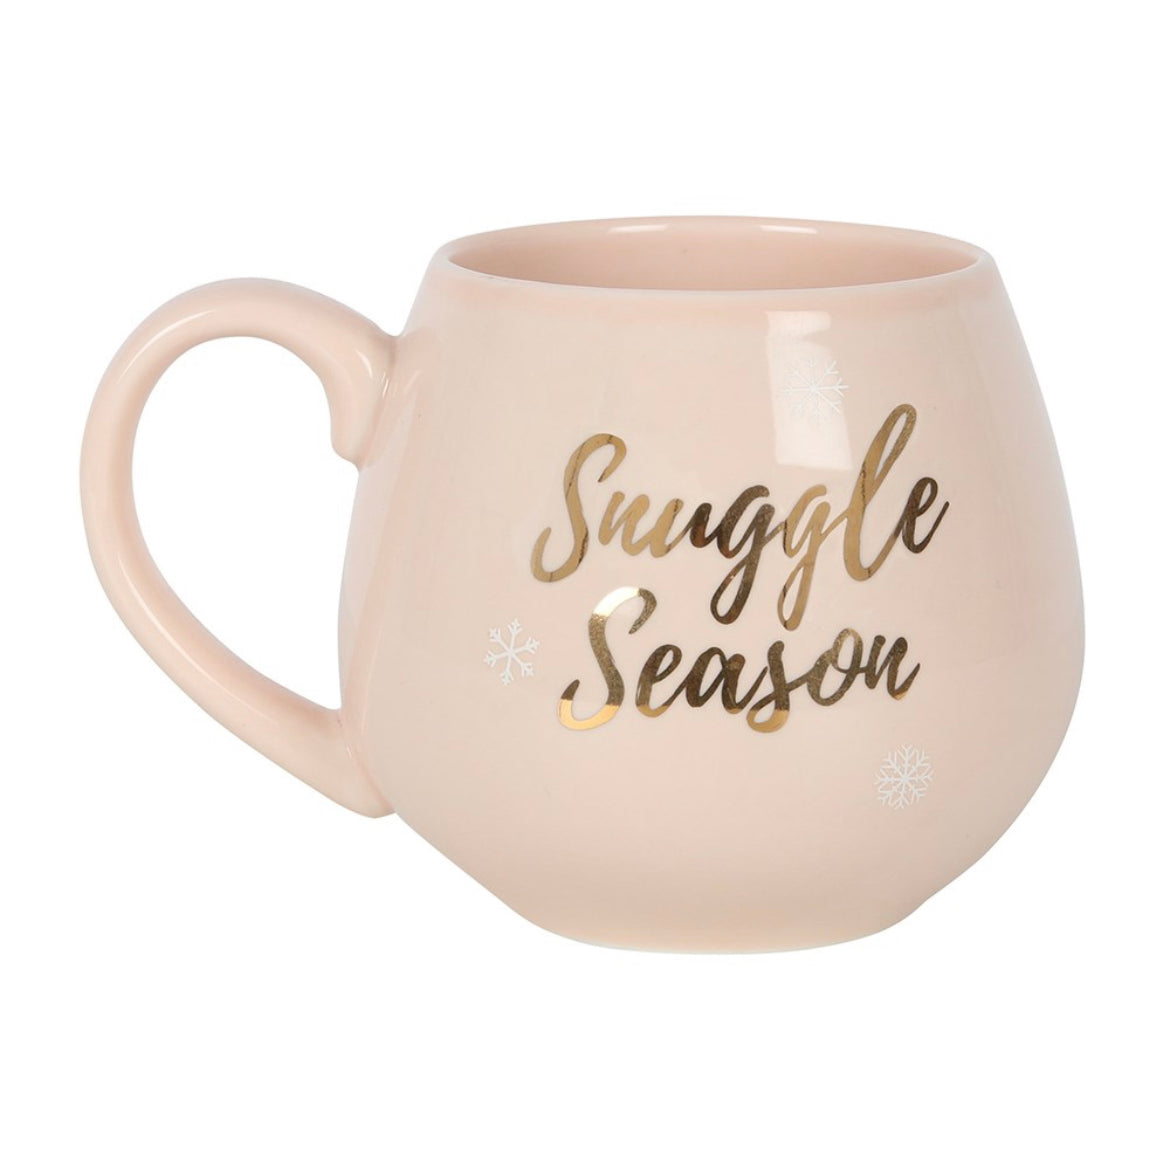 Snuggle Season Rounded Ceramic Mug